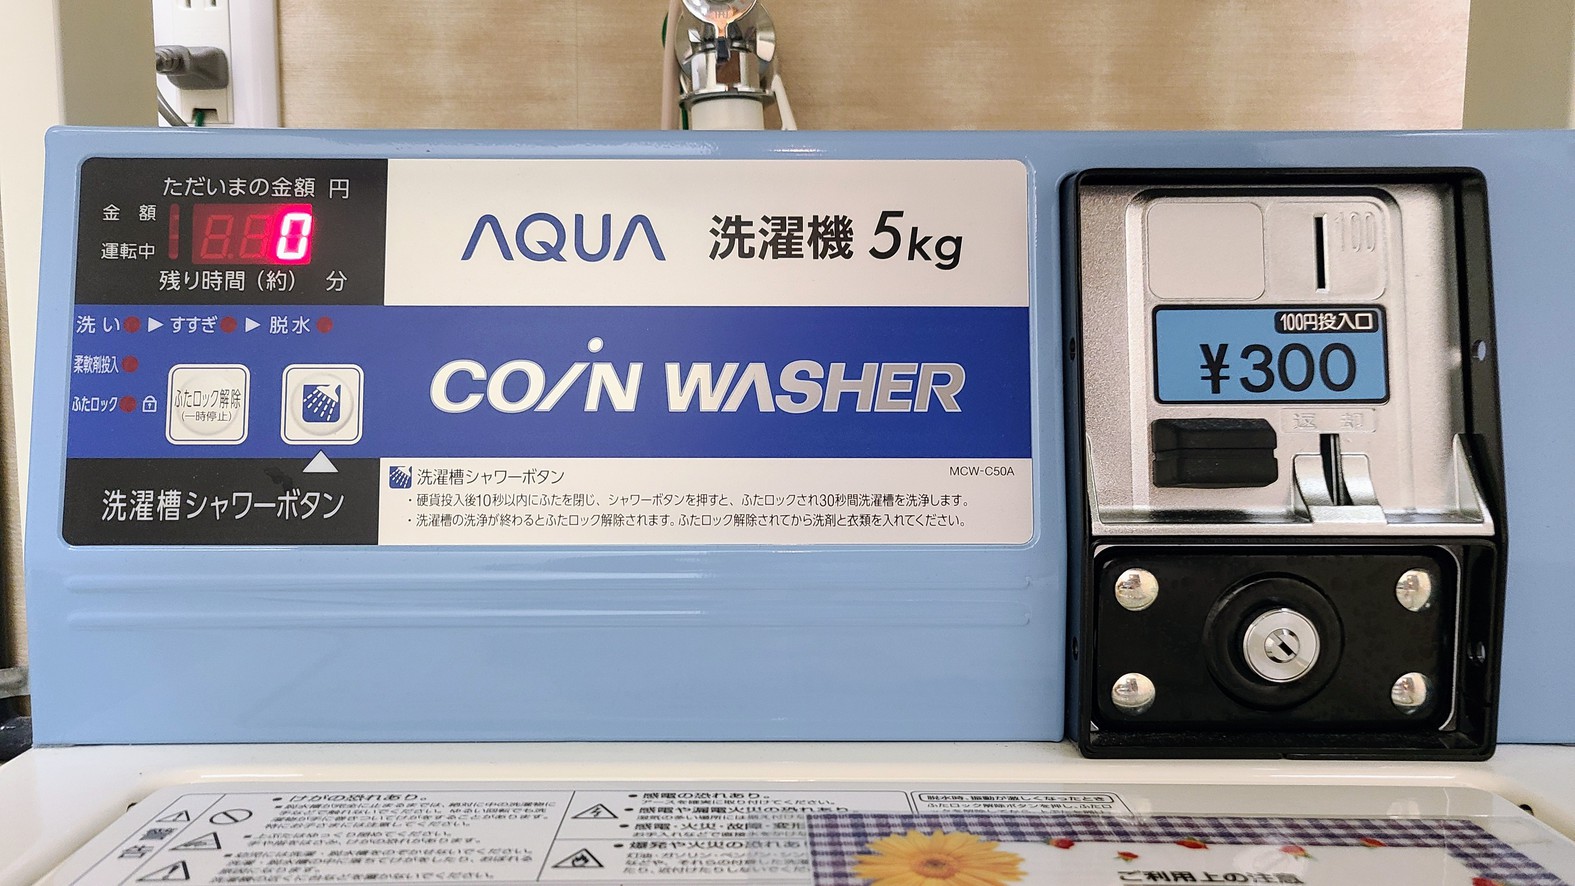 洗濯機は1回300円です。洗剤は自動投入です。